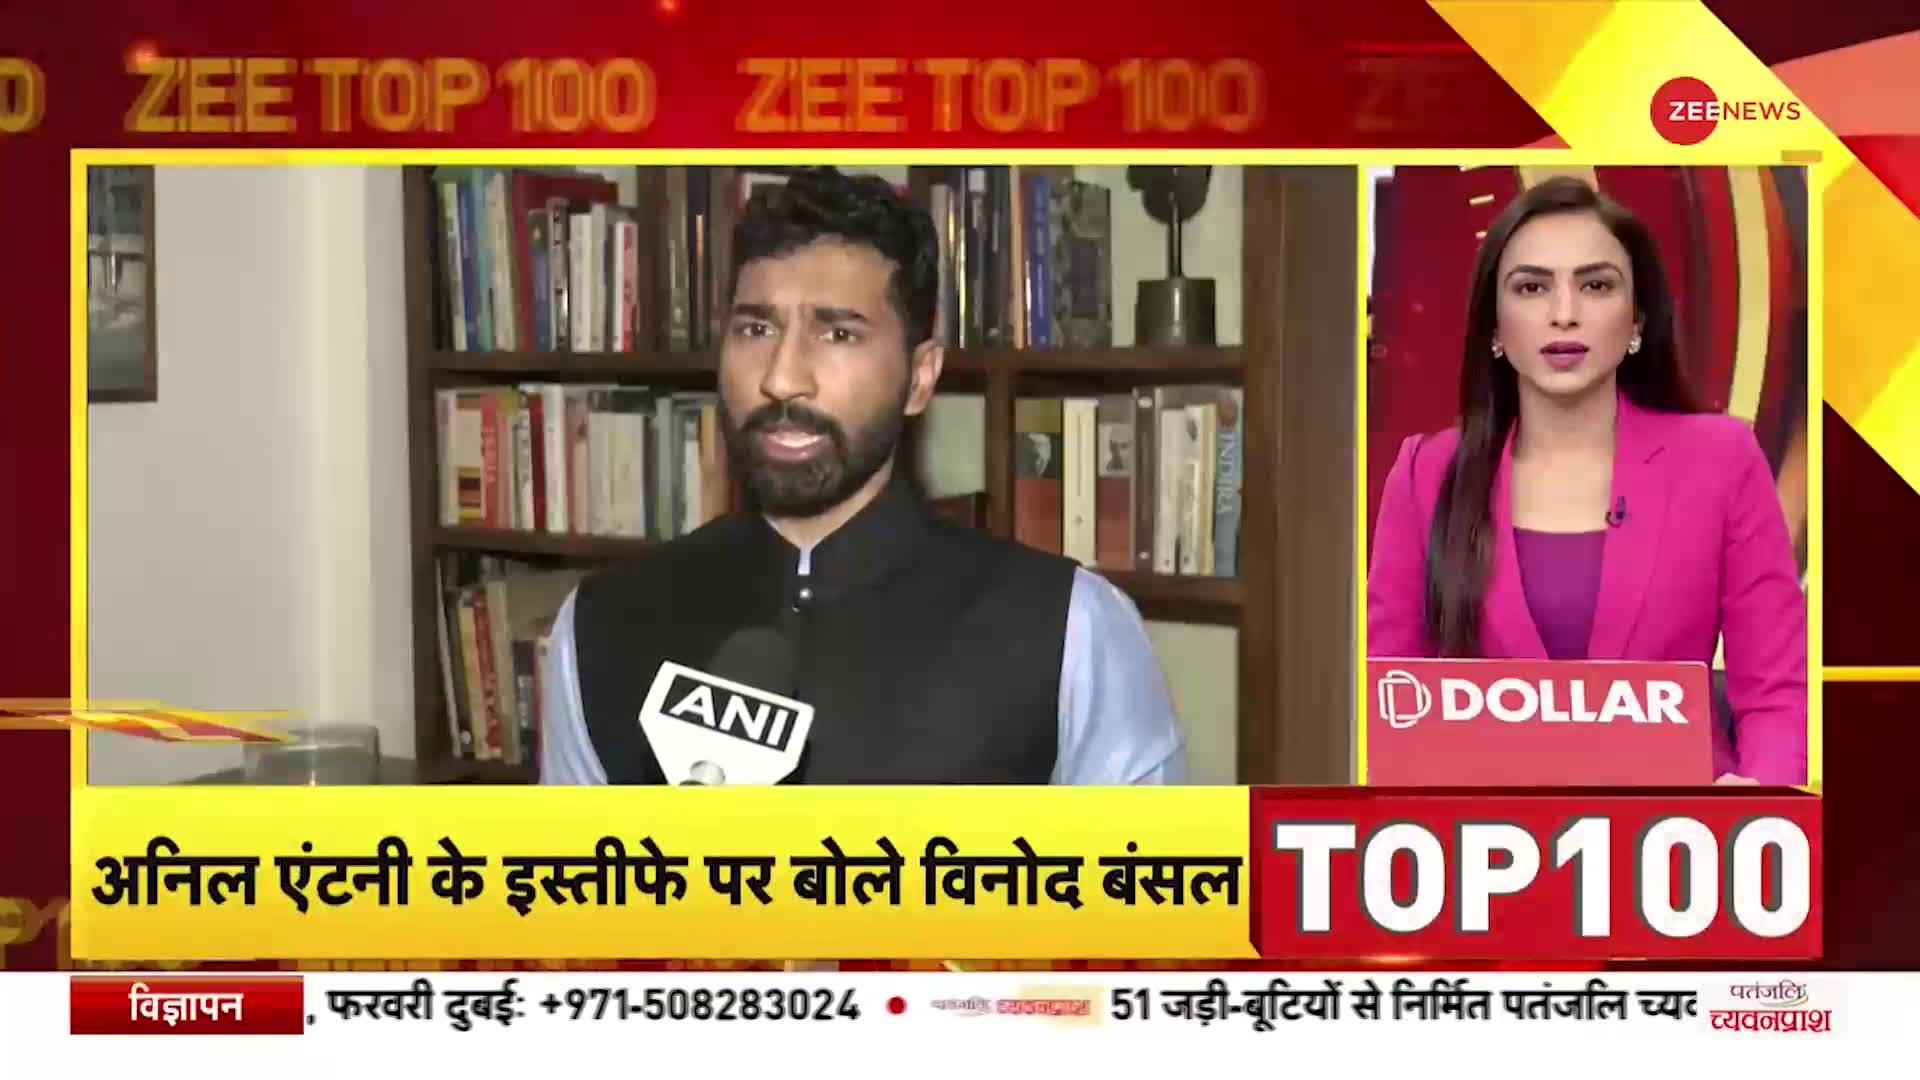 ZEE TOP 100: जोशीमठ आपदा पर Uttarakhand के CM Dhami बोले, '70% आम जनजीवन सामान्य'